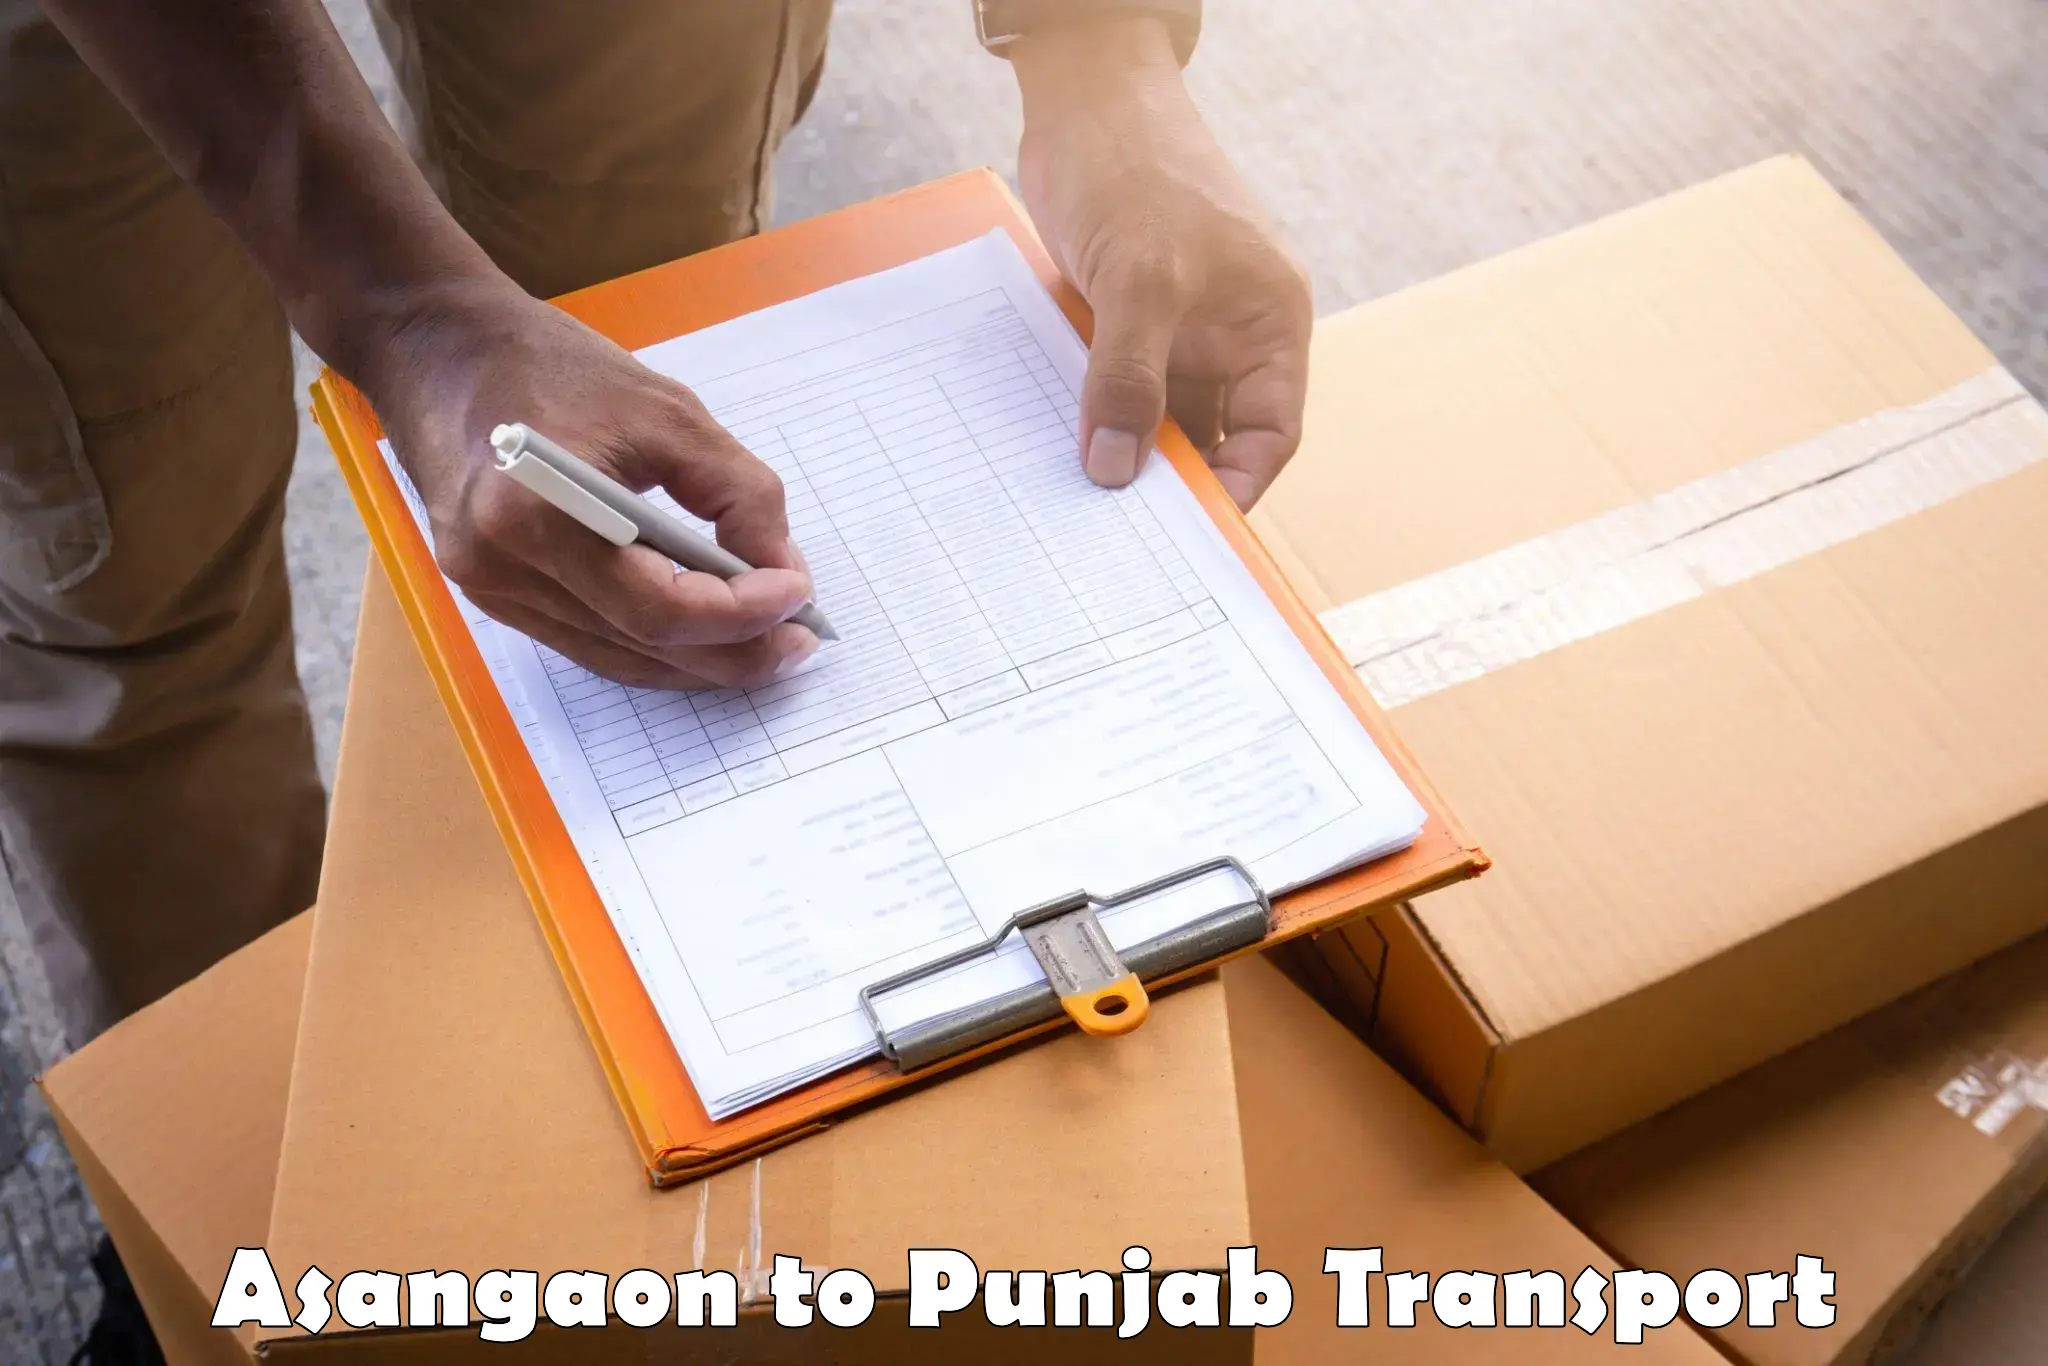 Daily transport service in Asangaon to Punjab